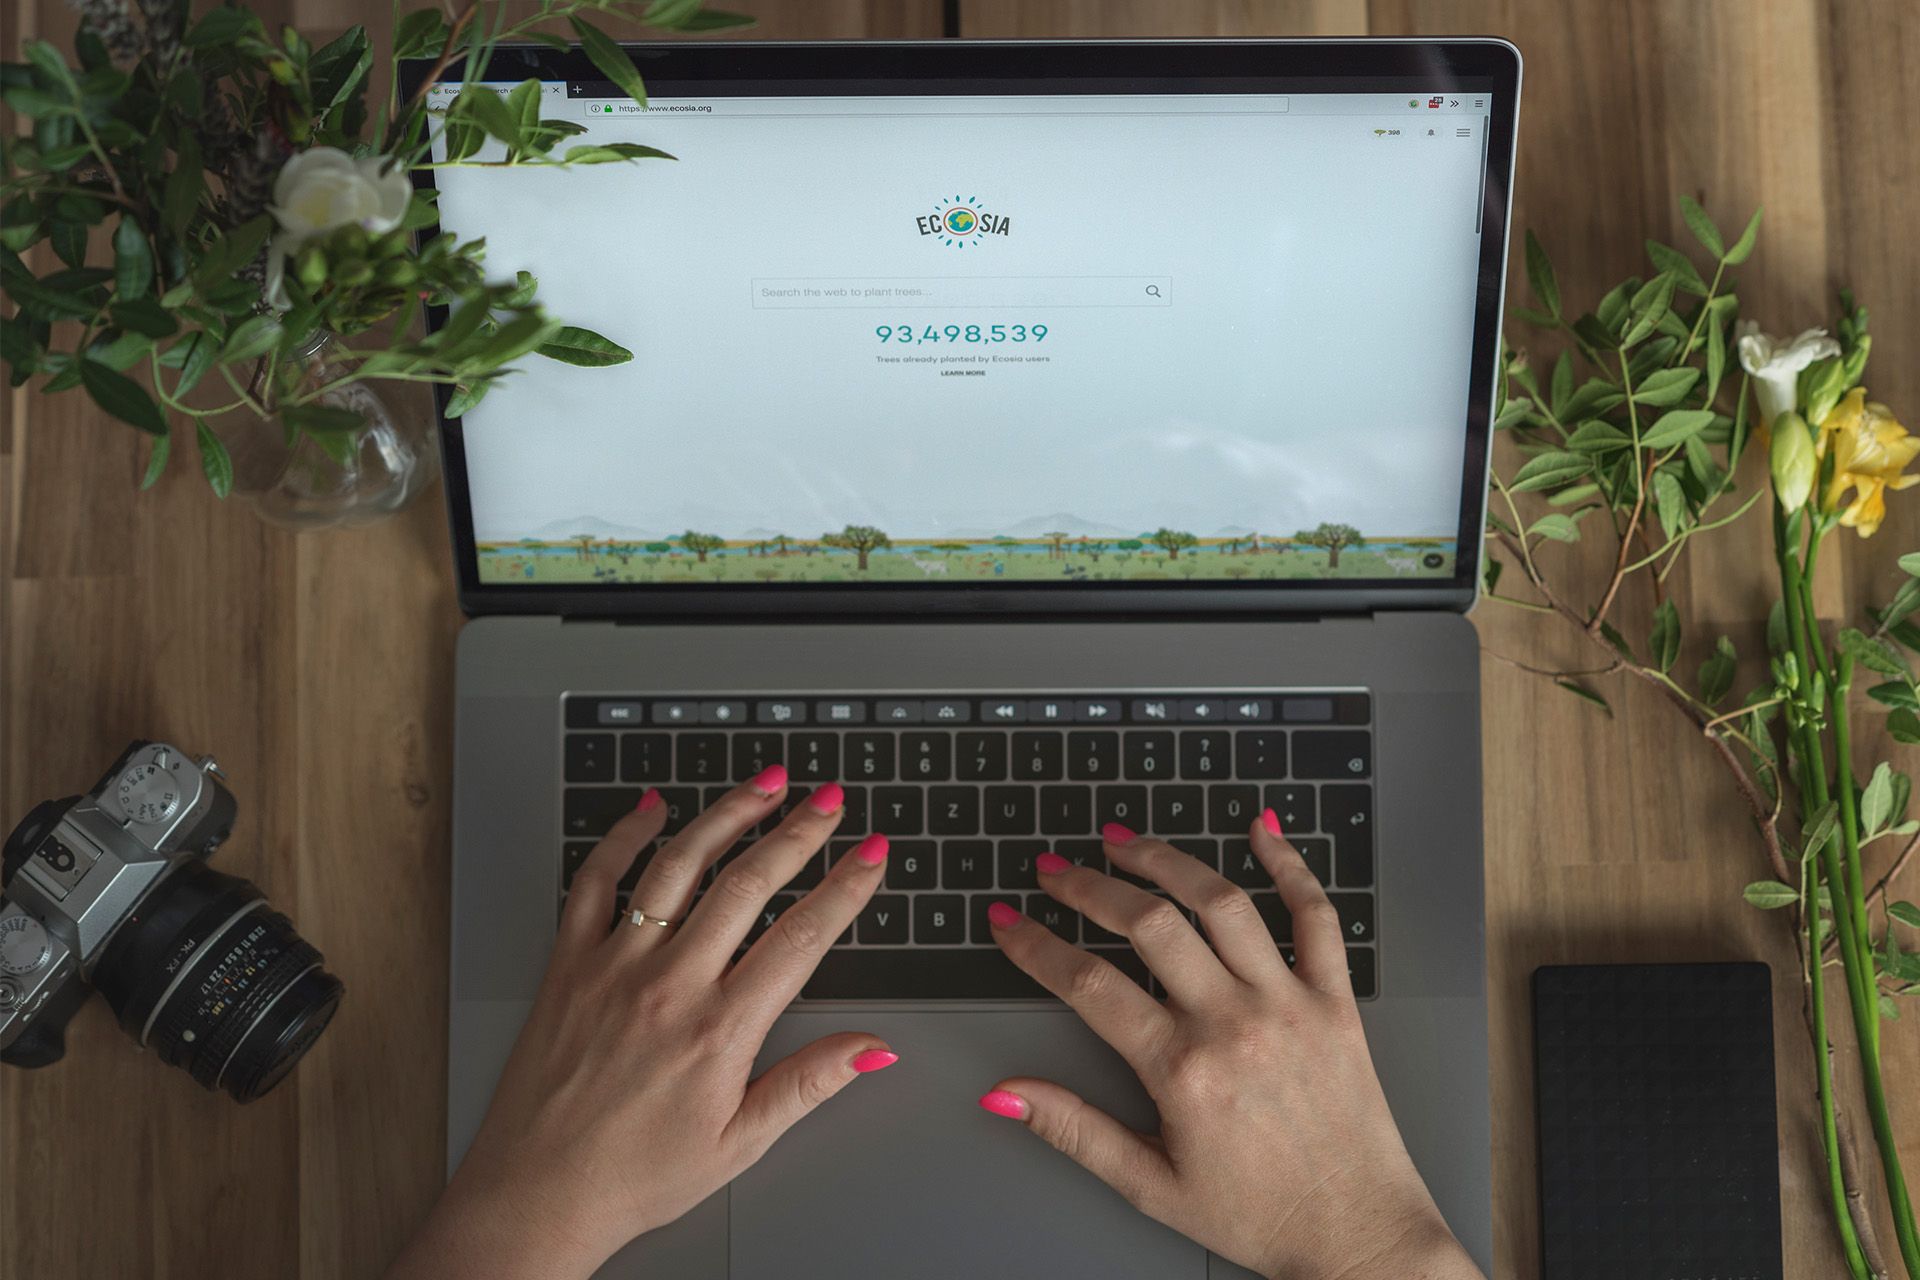 Le moteur de recherche Ecosia vu sur un écran d'ordinateur portable.